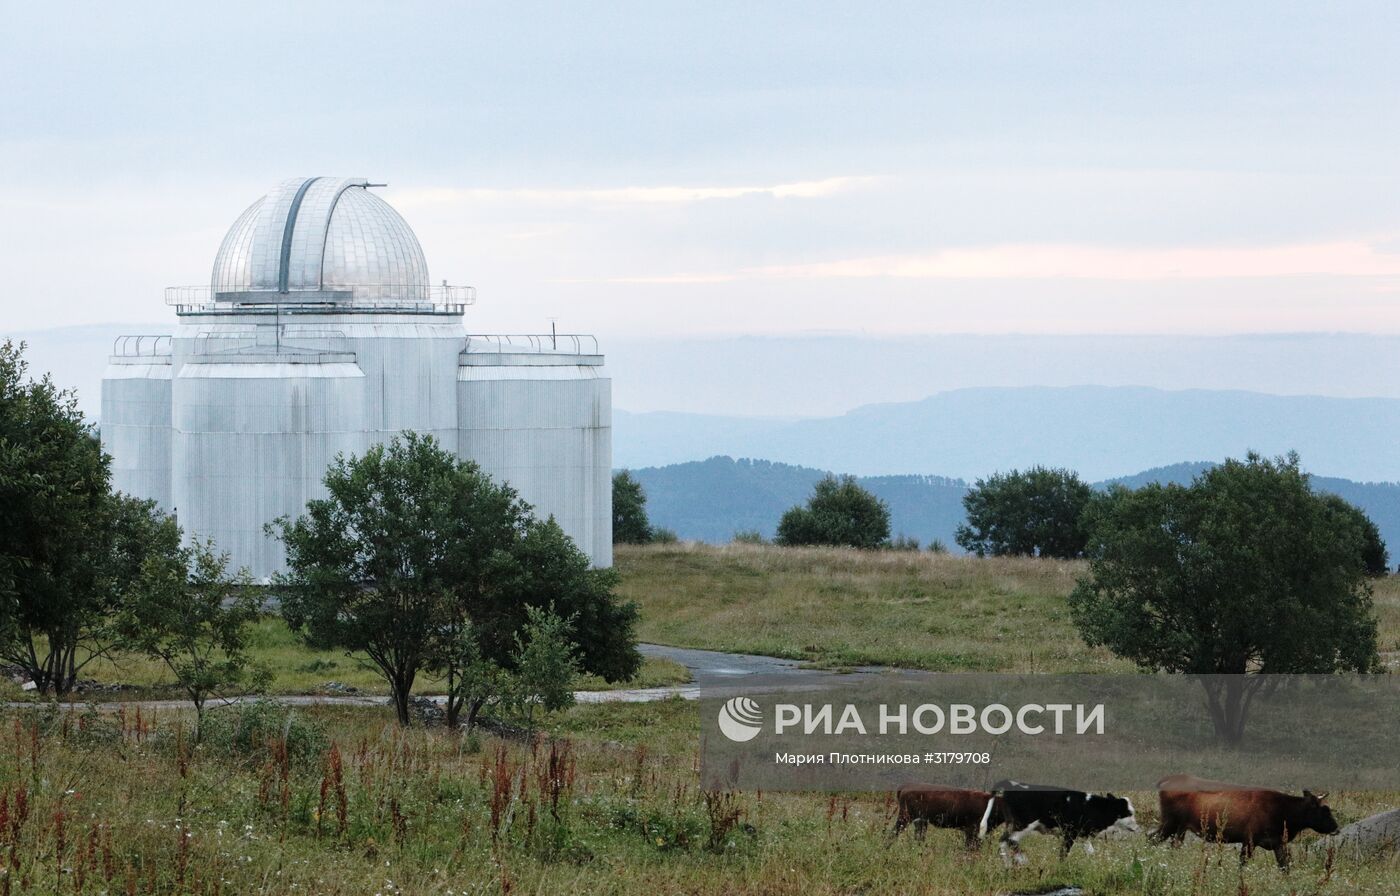 Специальная астрофизическая обсерватория РАН